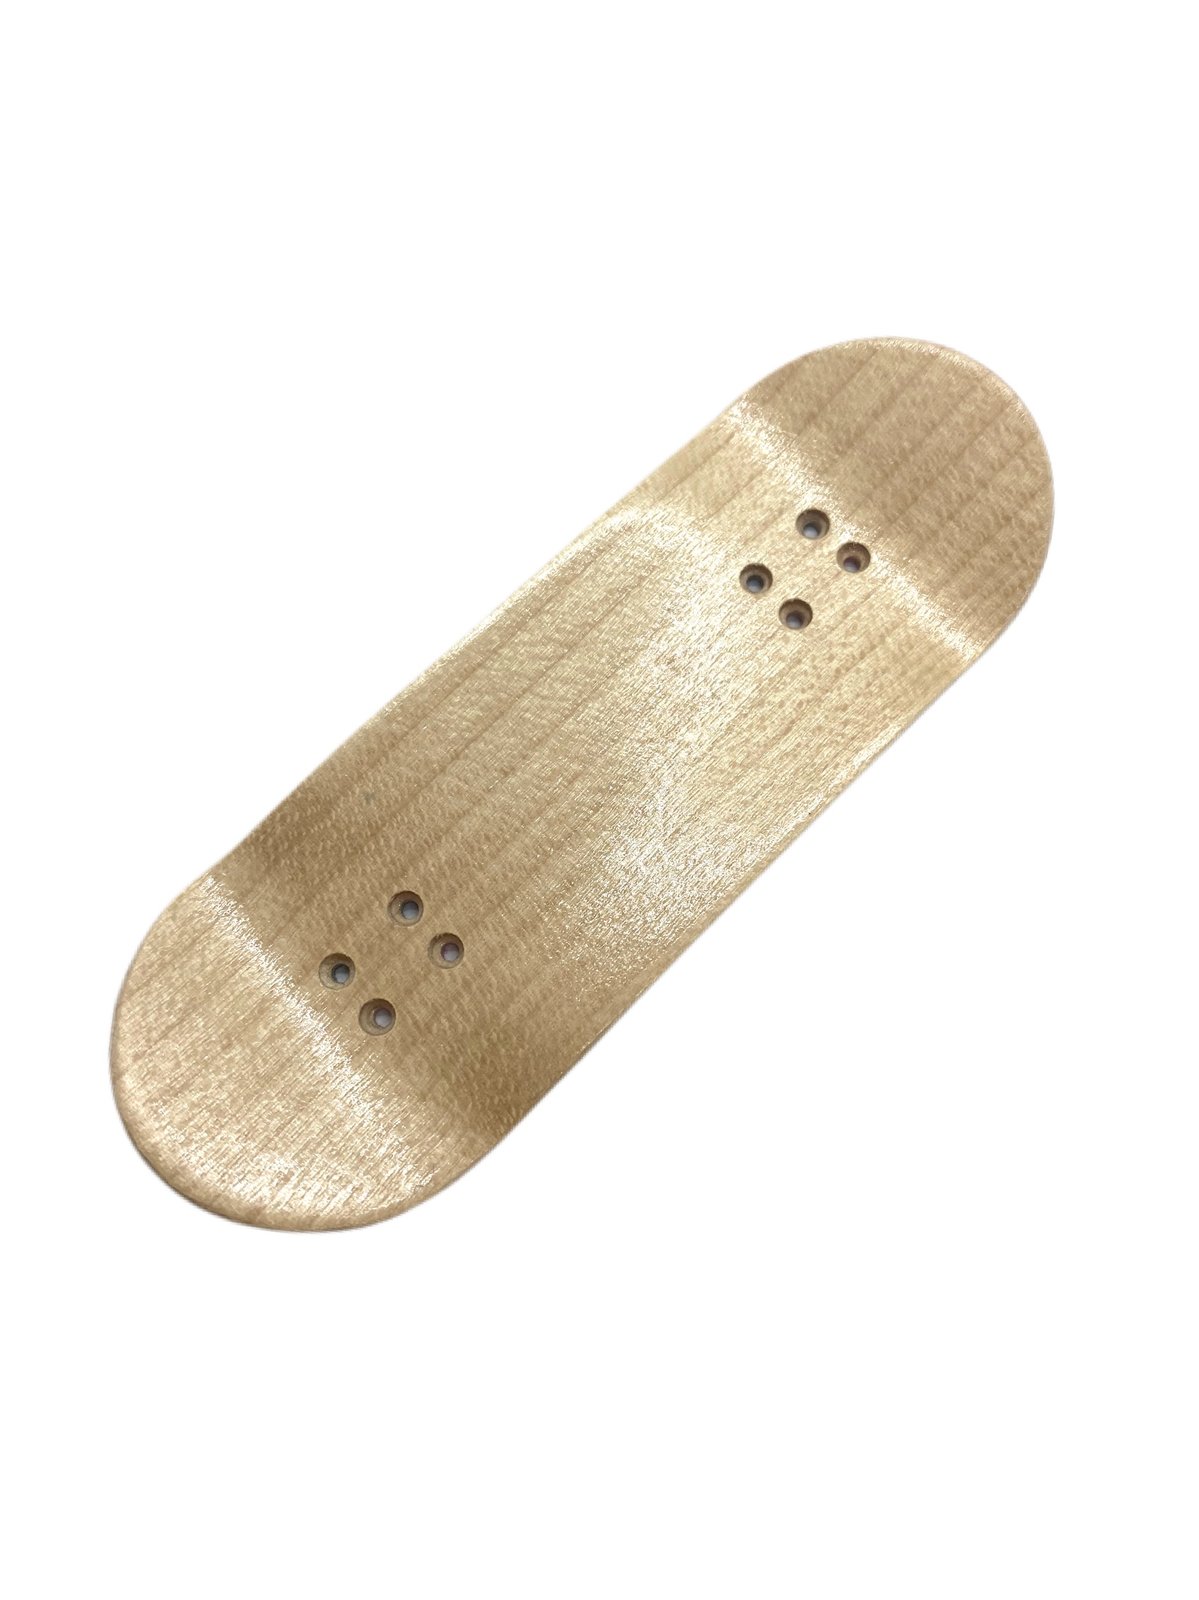 軽量+ストレッチ性+吸水速乾 SUPREME × Arkitip + Finger Skateboard